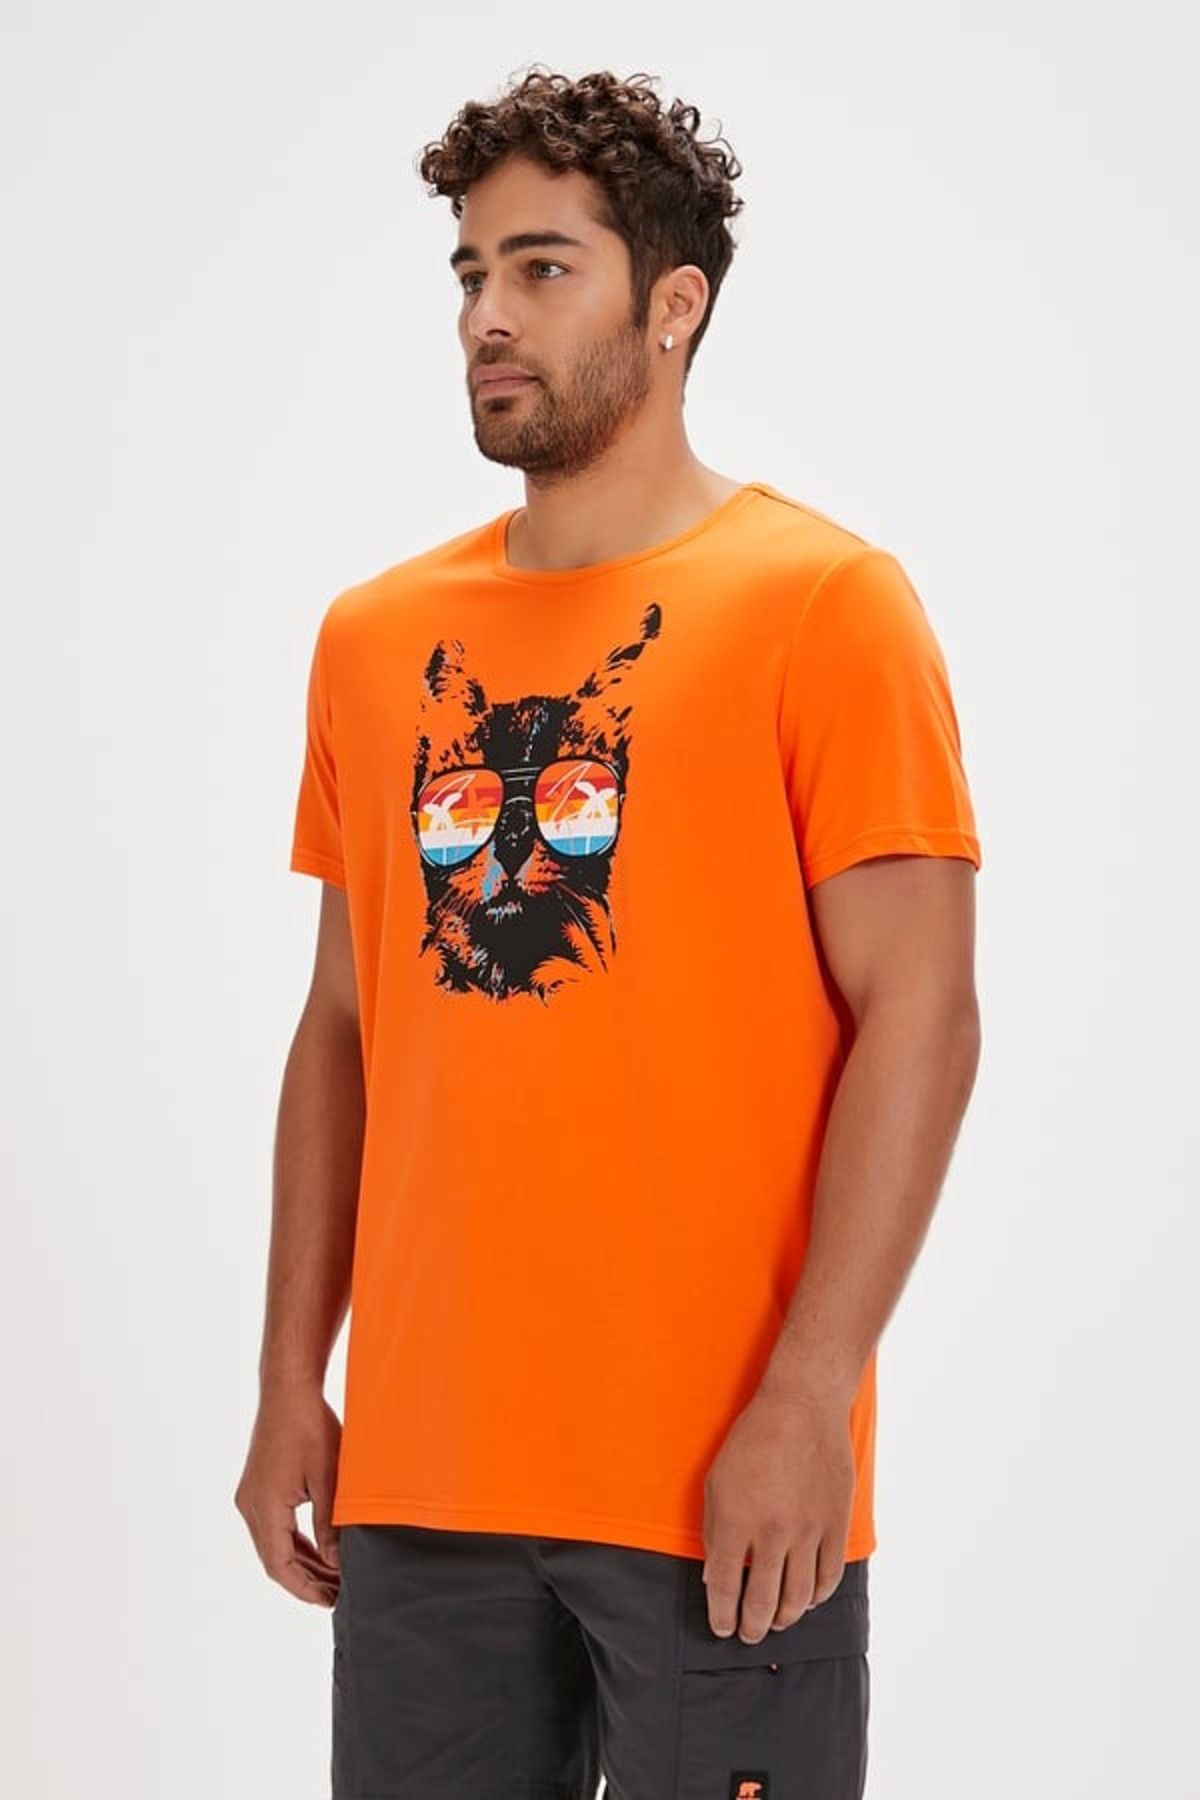 Bad Bear Manx Erkek T-shirt 24.01.07.011 Orange